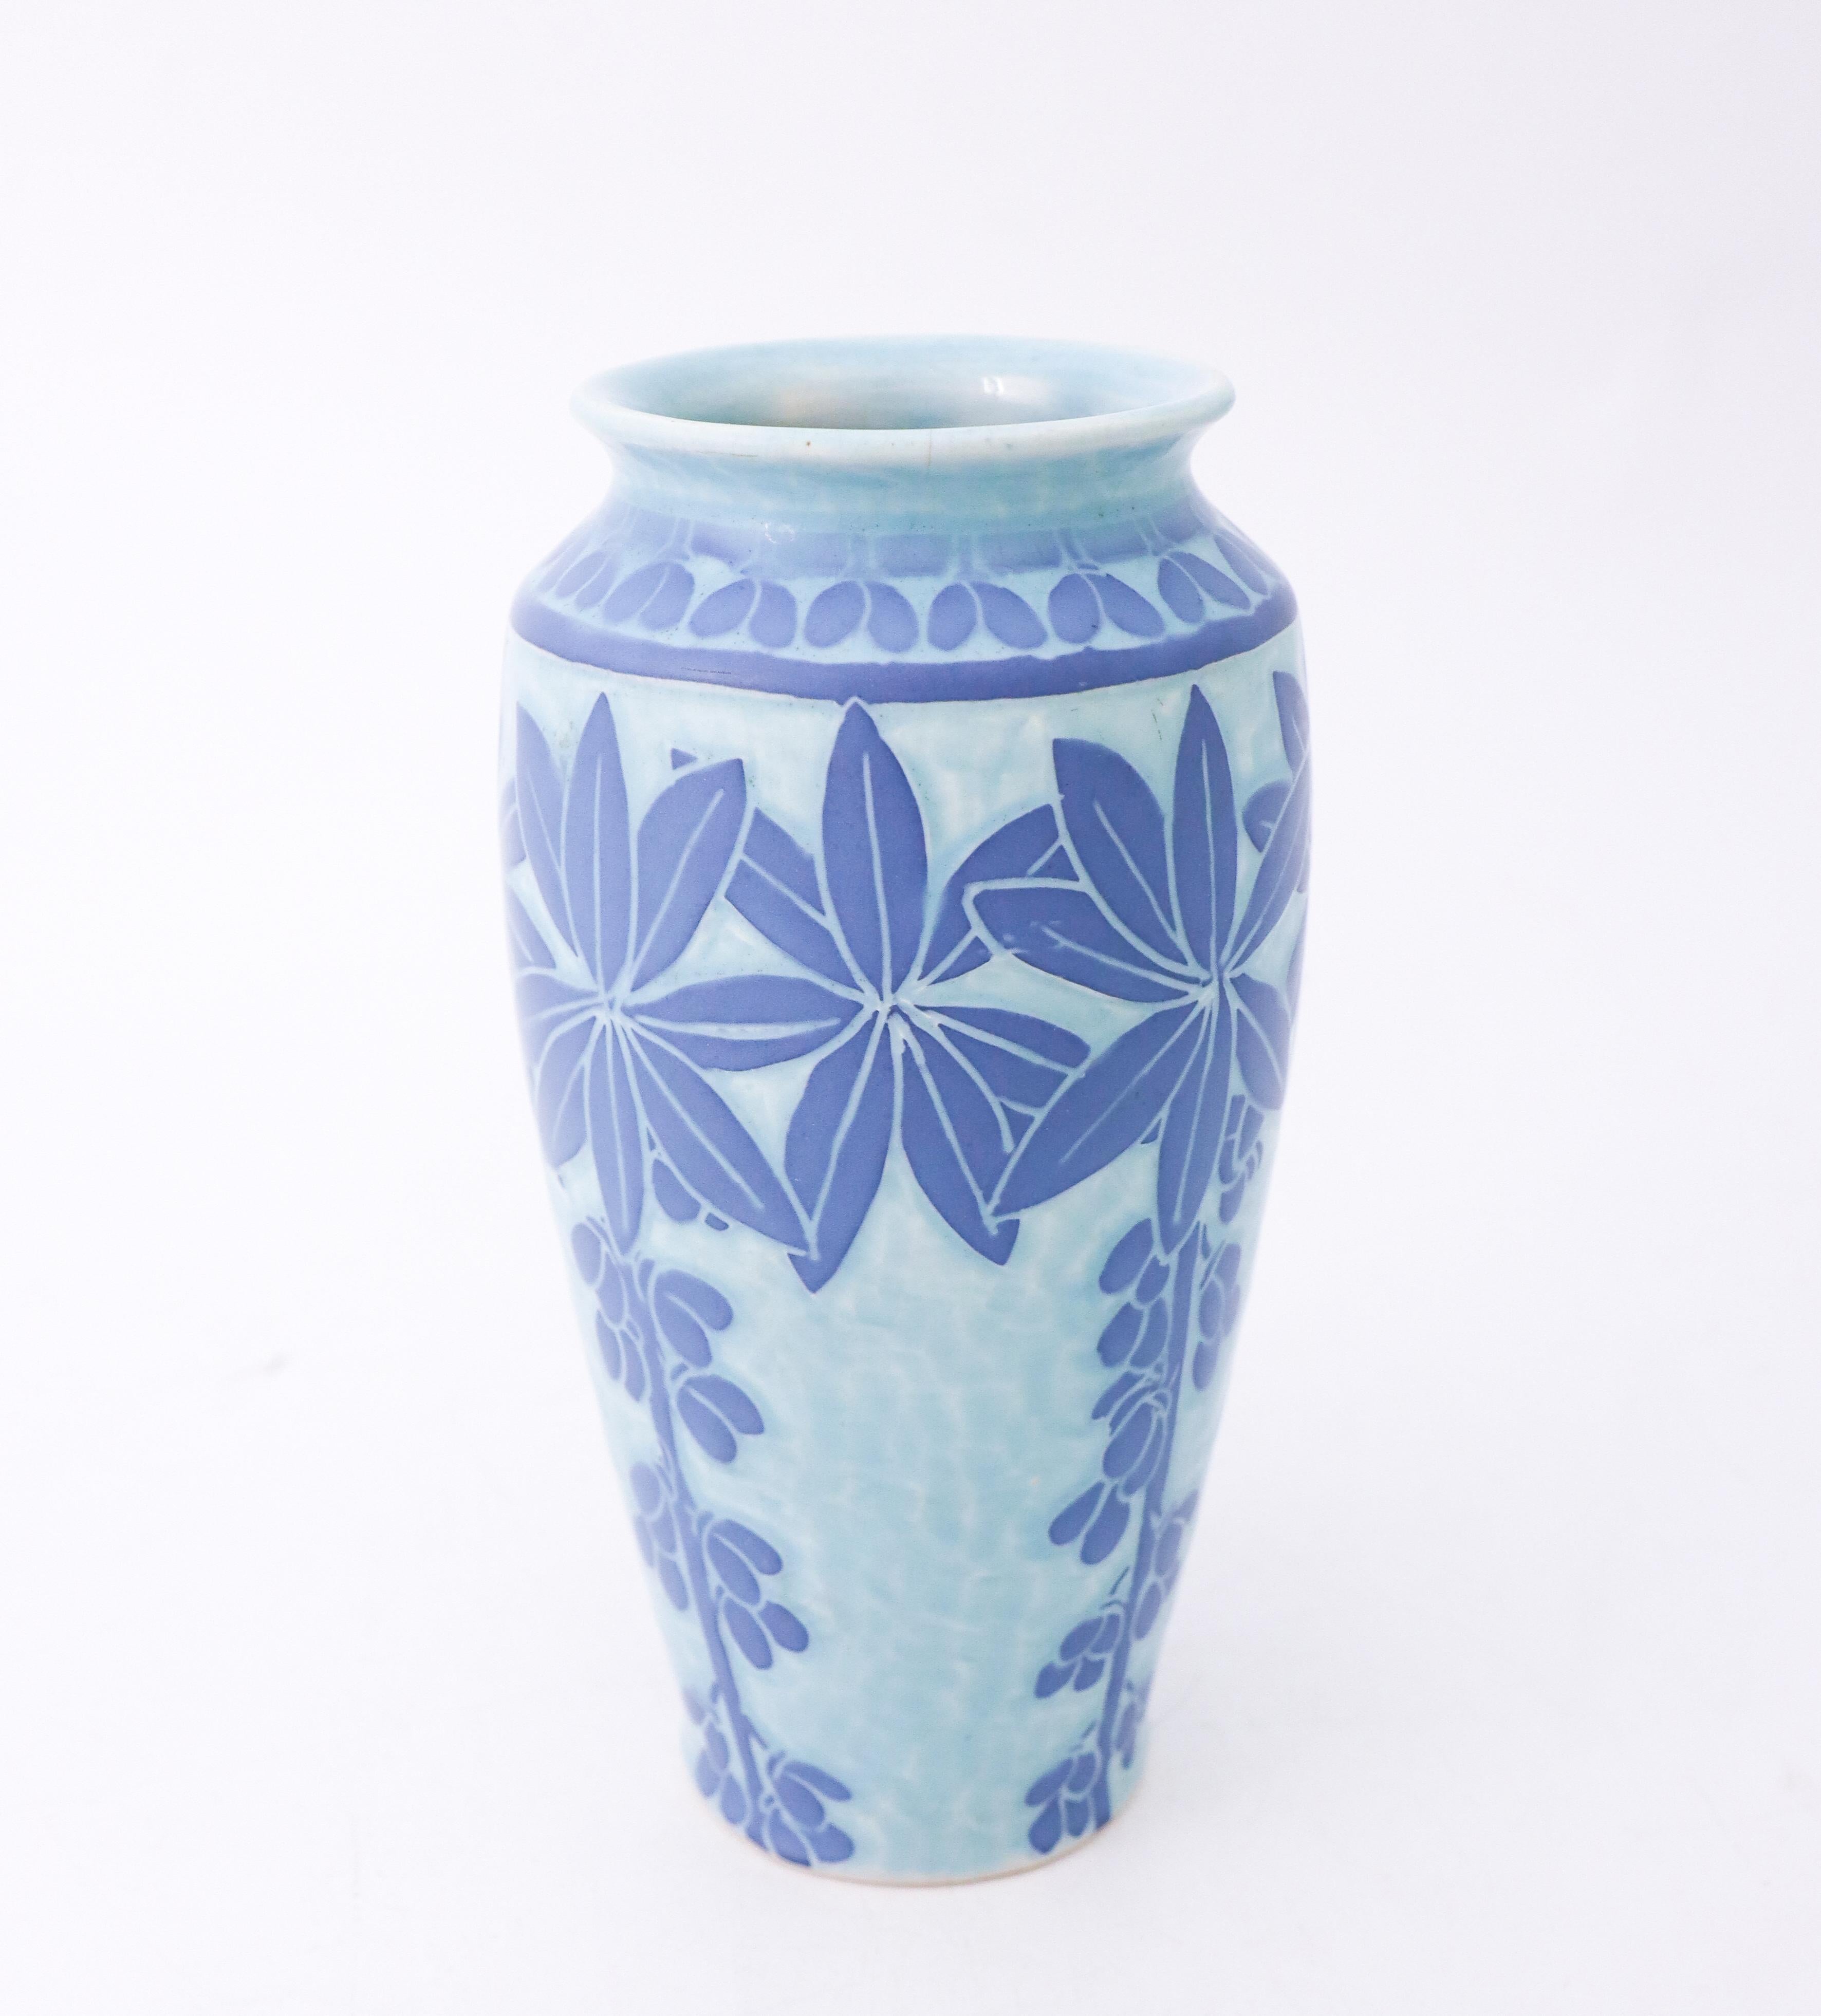 Glazed Art Nouveau Vase Ceramics, Floral Turquoise & Blue, Scandinavian Vintage, 1915